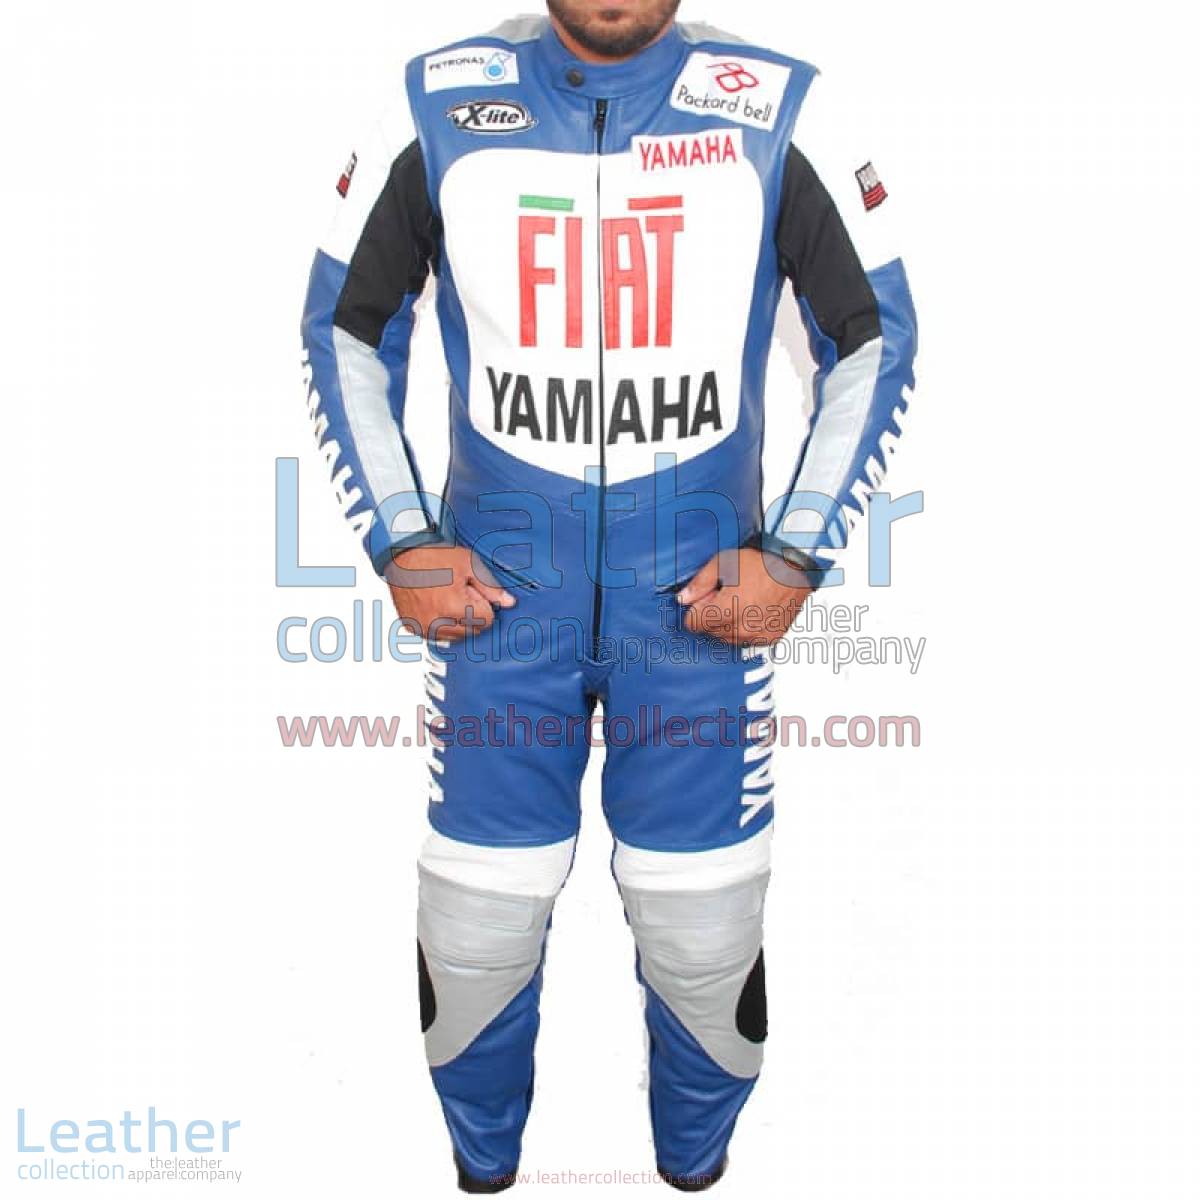 Yamaha FIAT Motorcycle Racing Leather Suit | yamaha racing,yamaha fiat